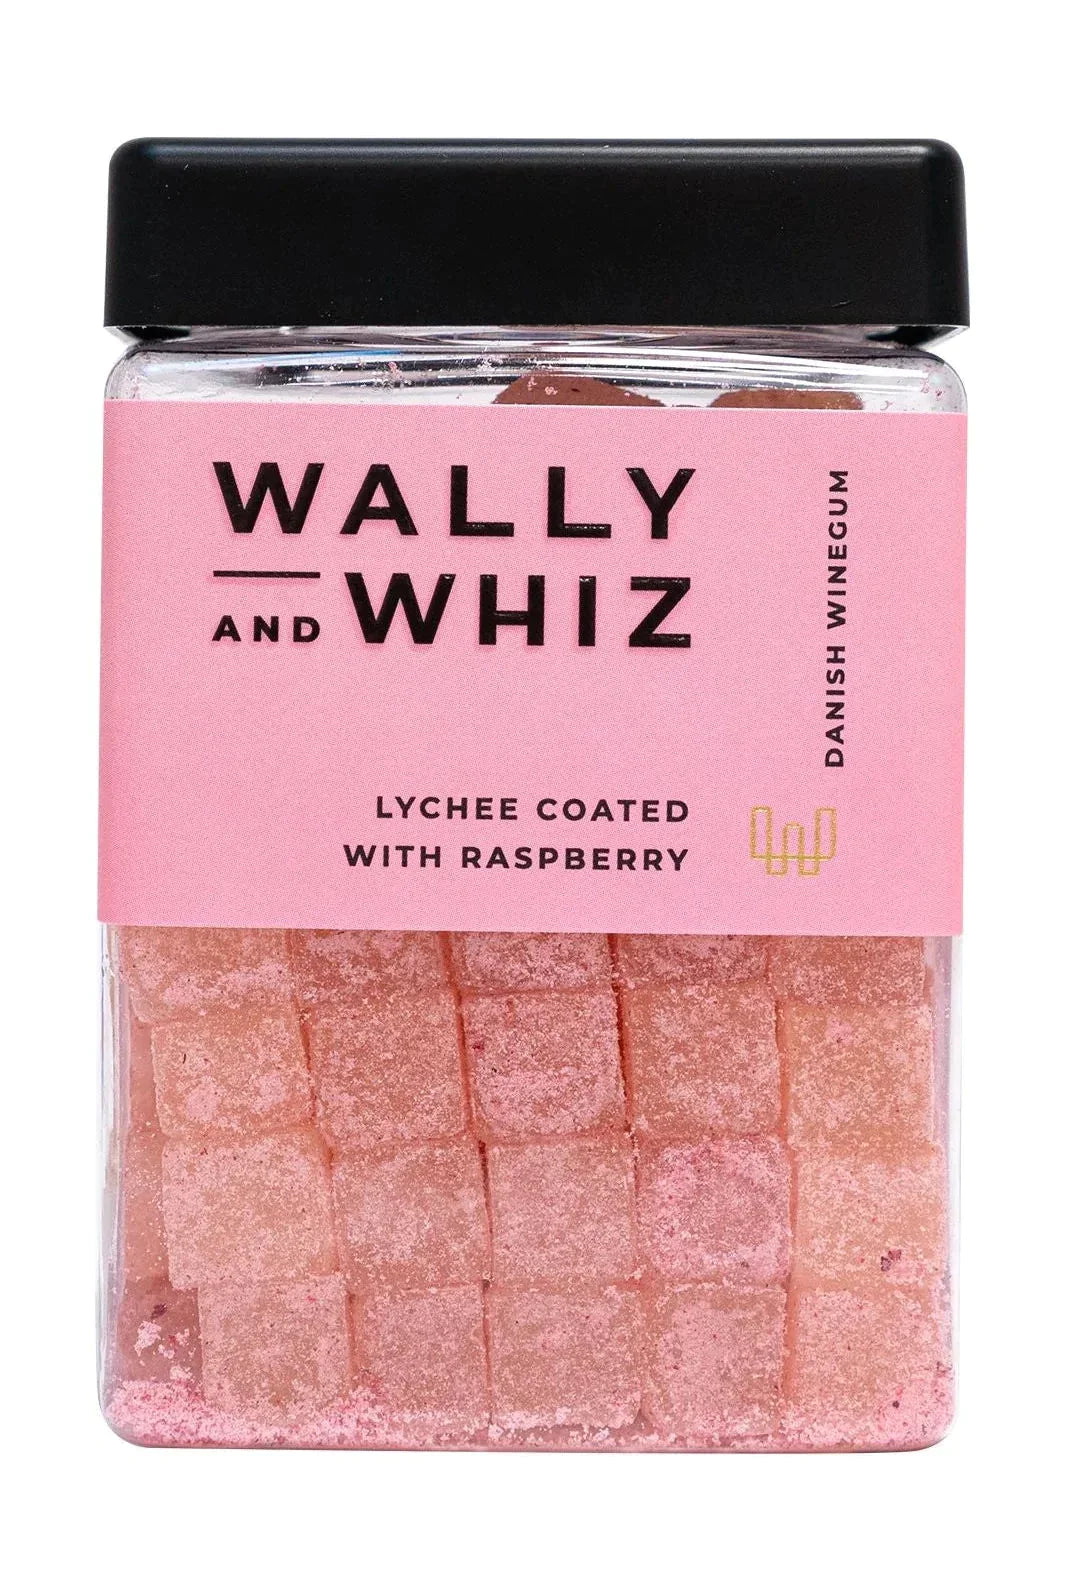 Cube de gomme de vin Wally et Whiz, litchi avec framboise, 240g